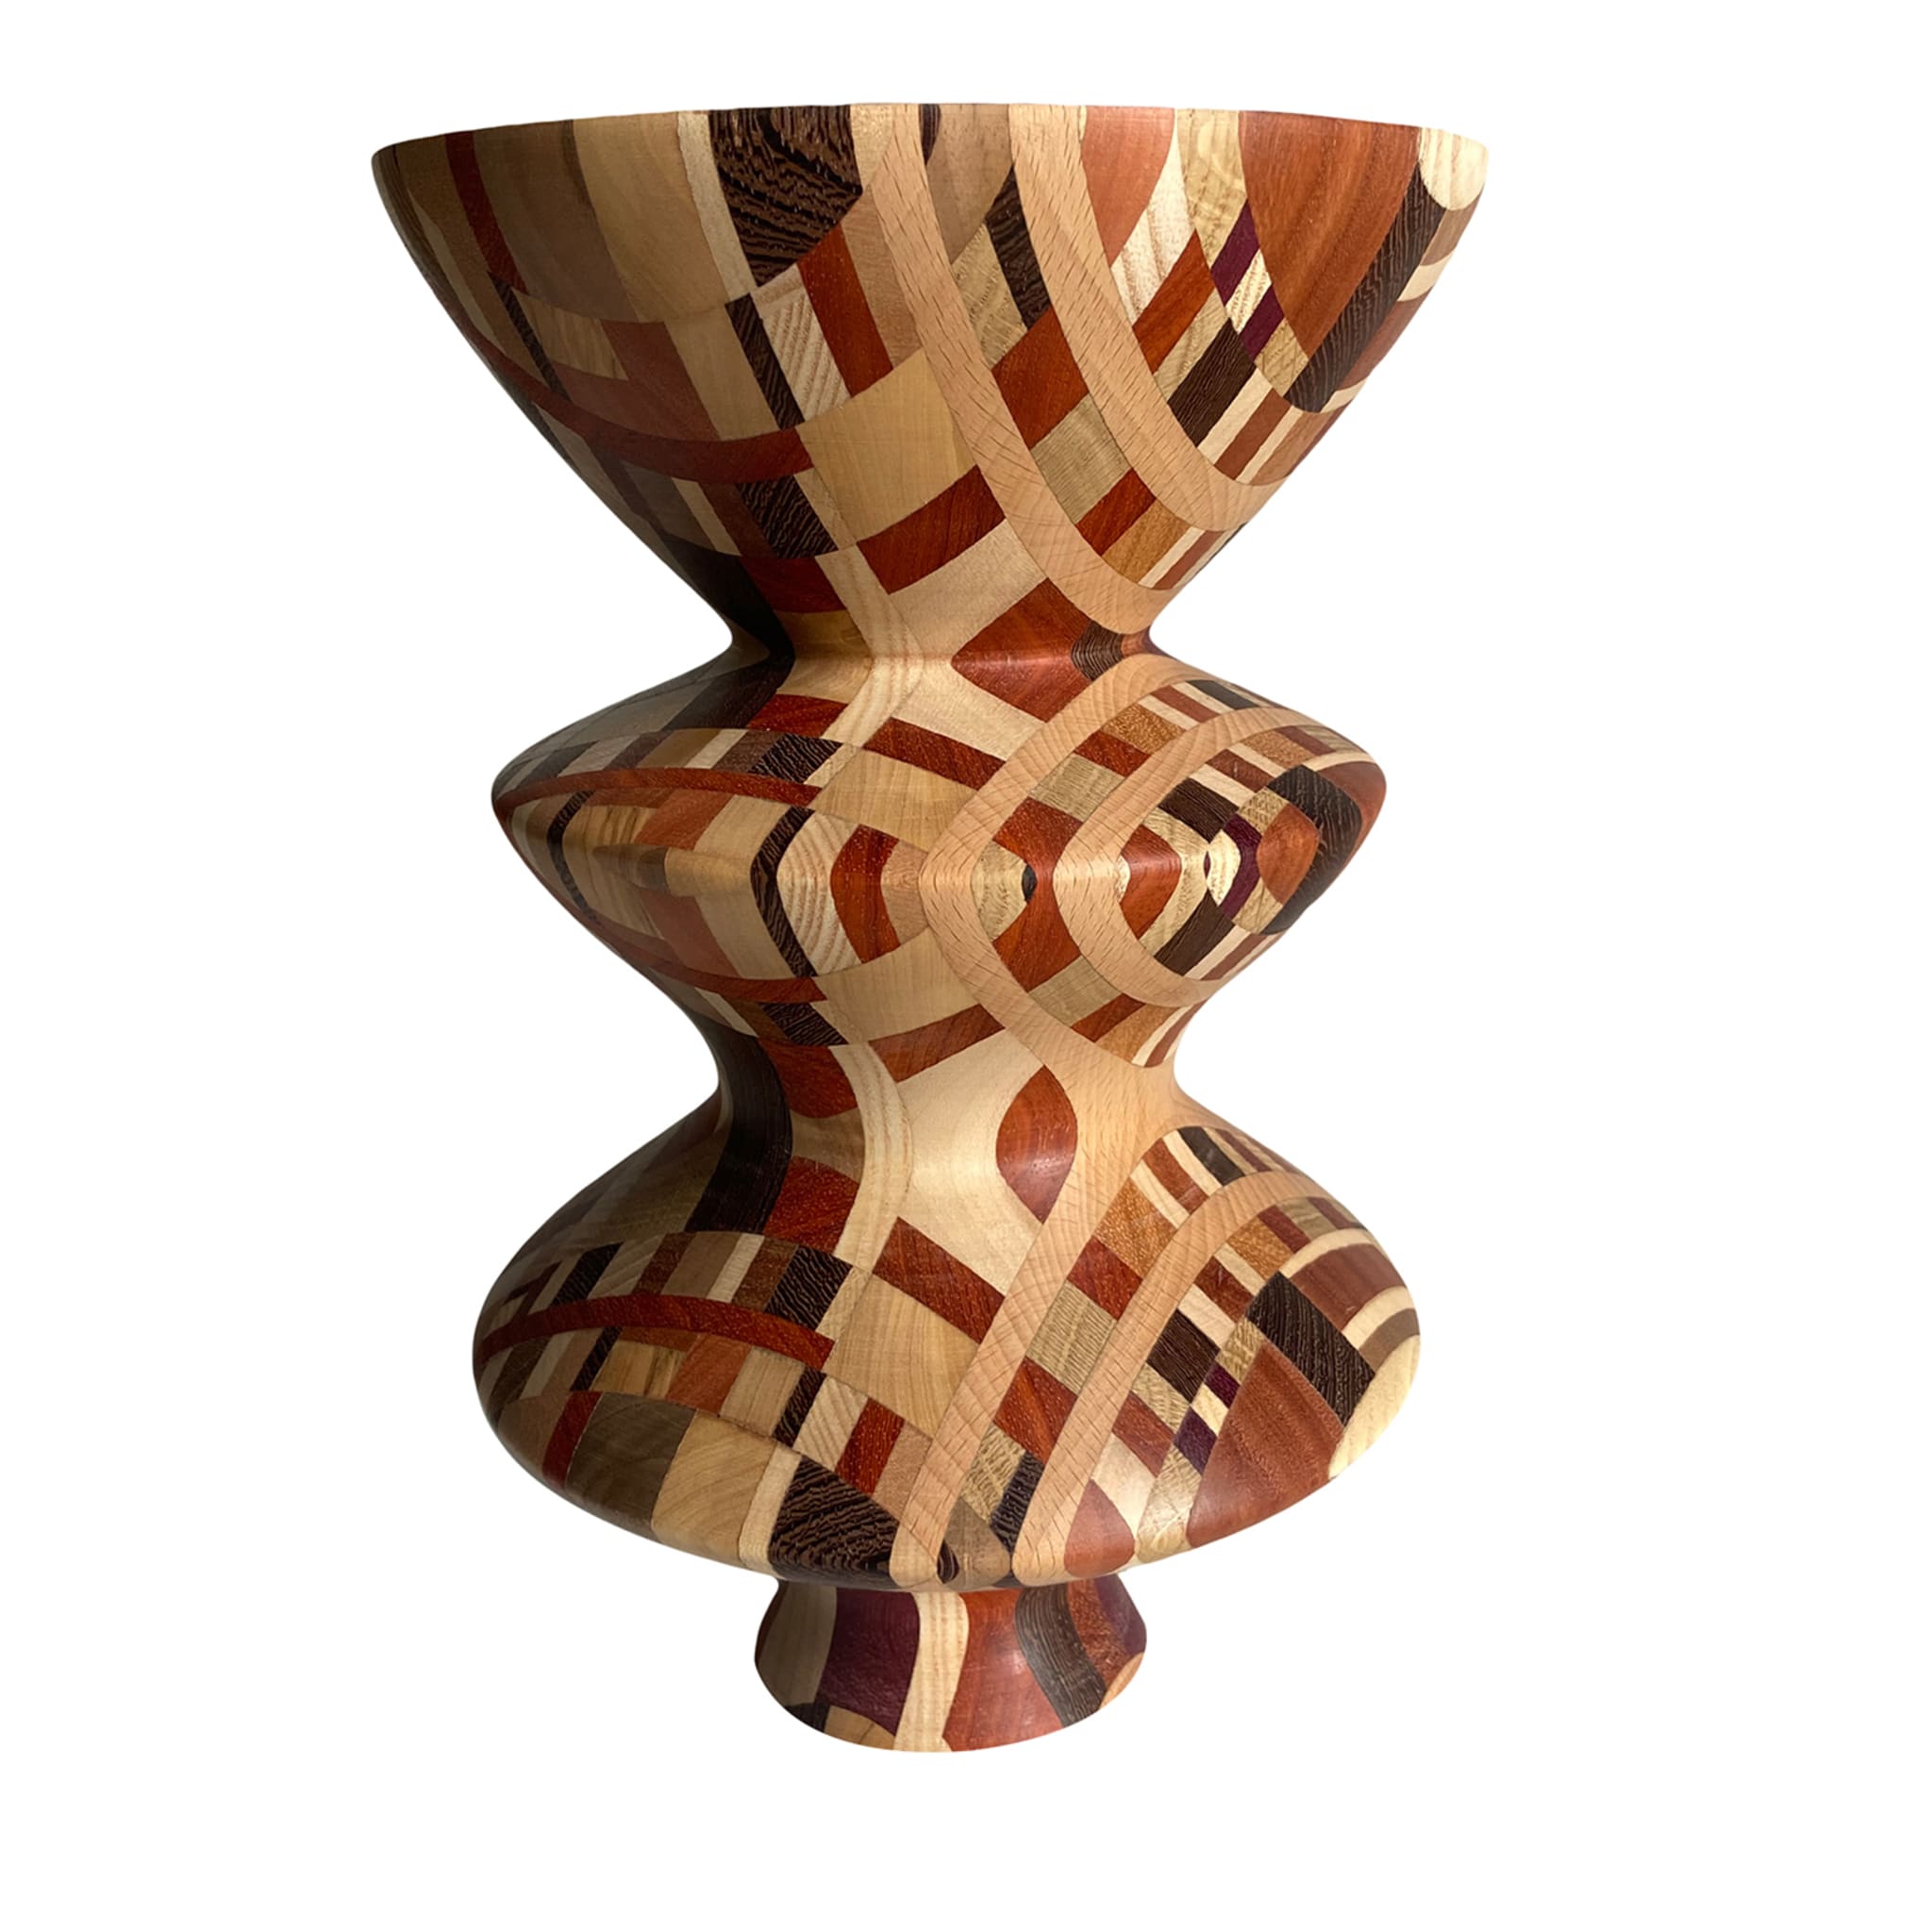 David Polyhedral Vase - Main view